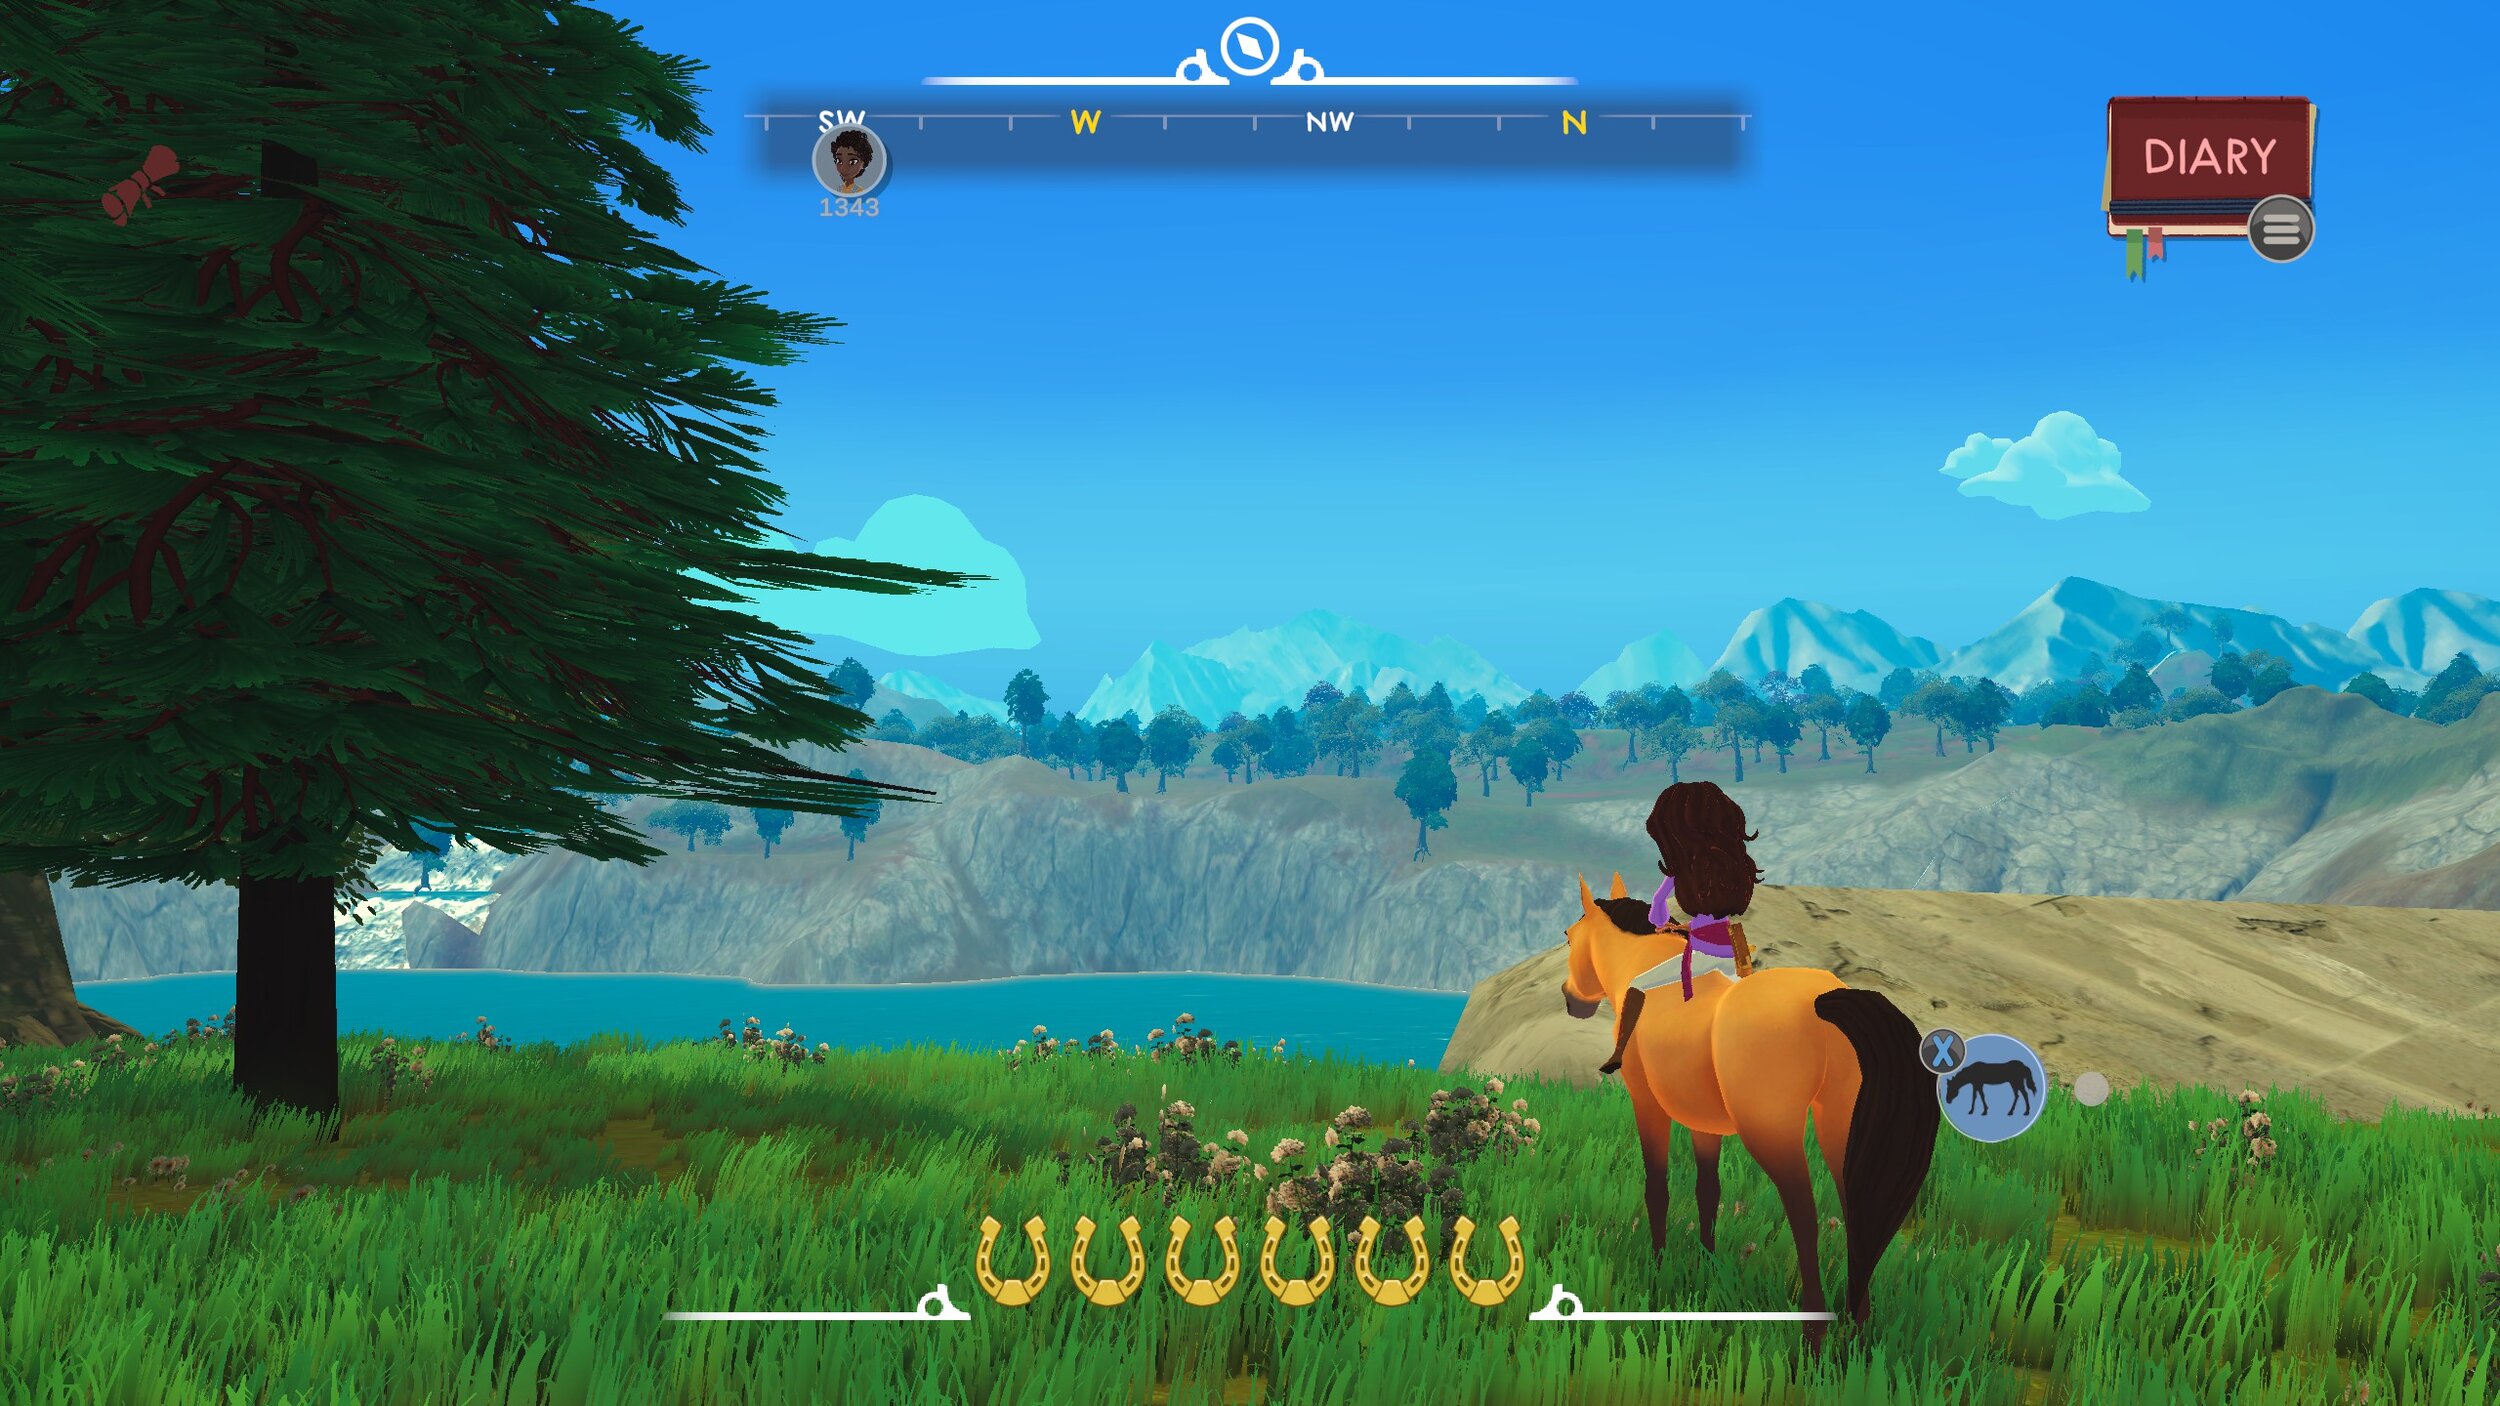 Jogo Spirit – Stallion of the Cimarron no Jogos 360